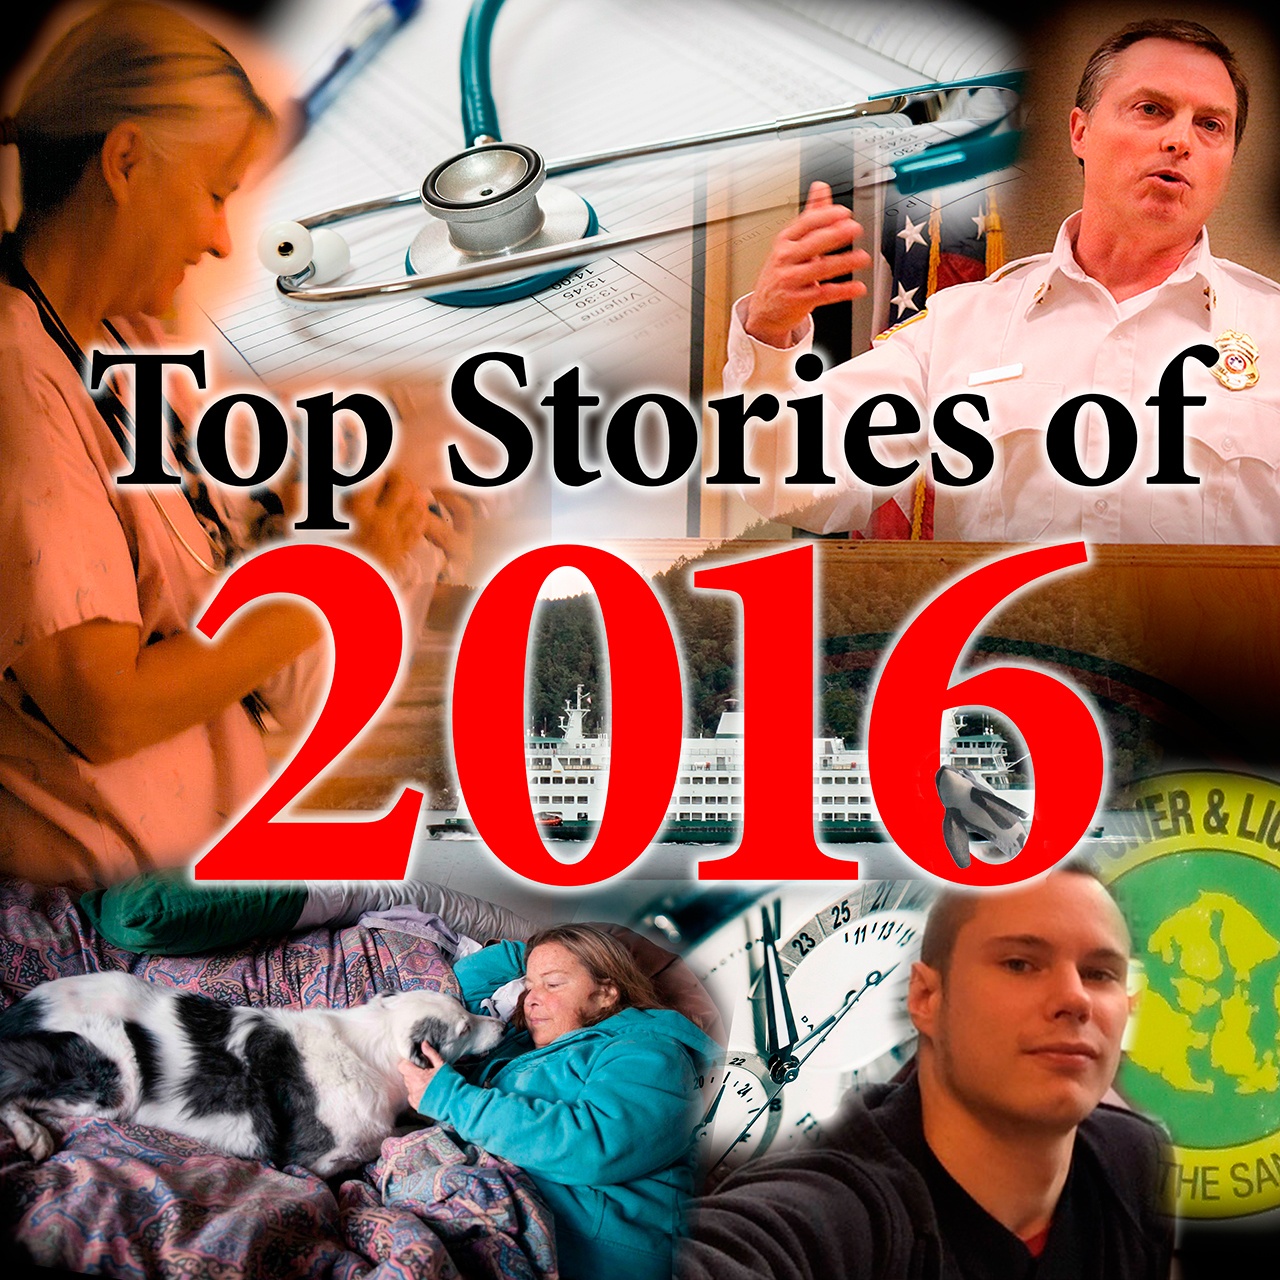 Top 10 stories of 2016